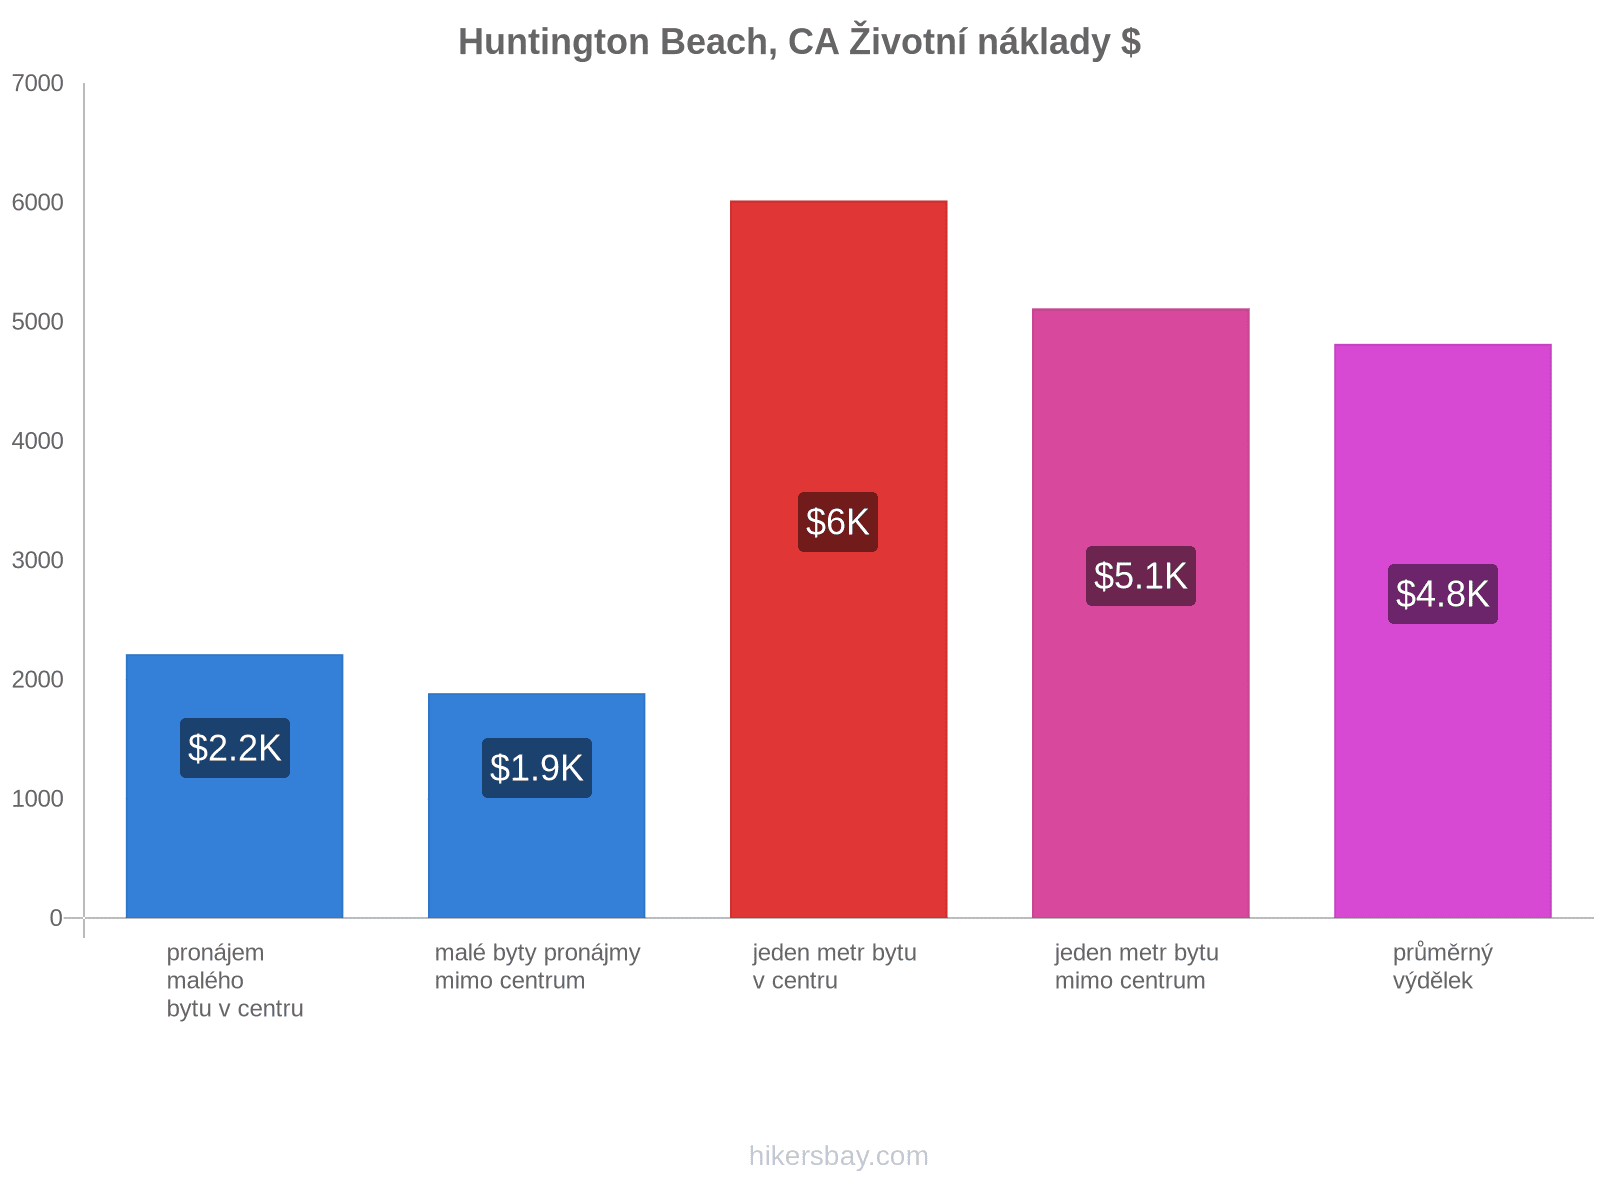 Huntington Beach, CA životní náklady hikersbay.com